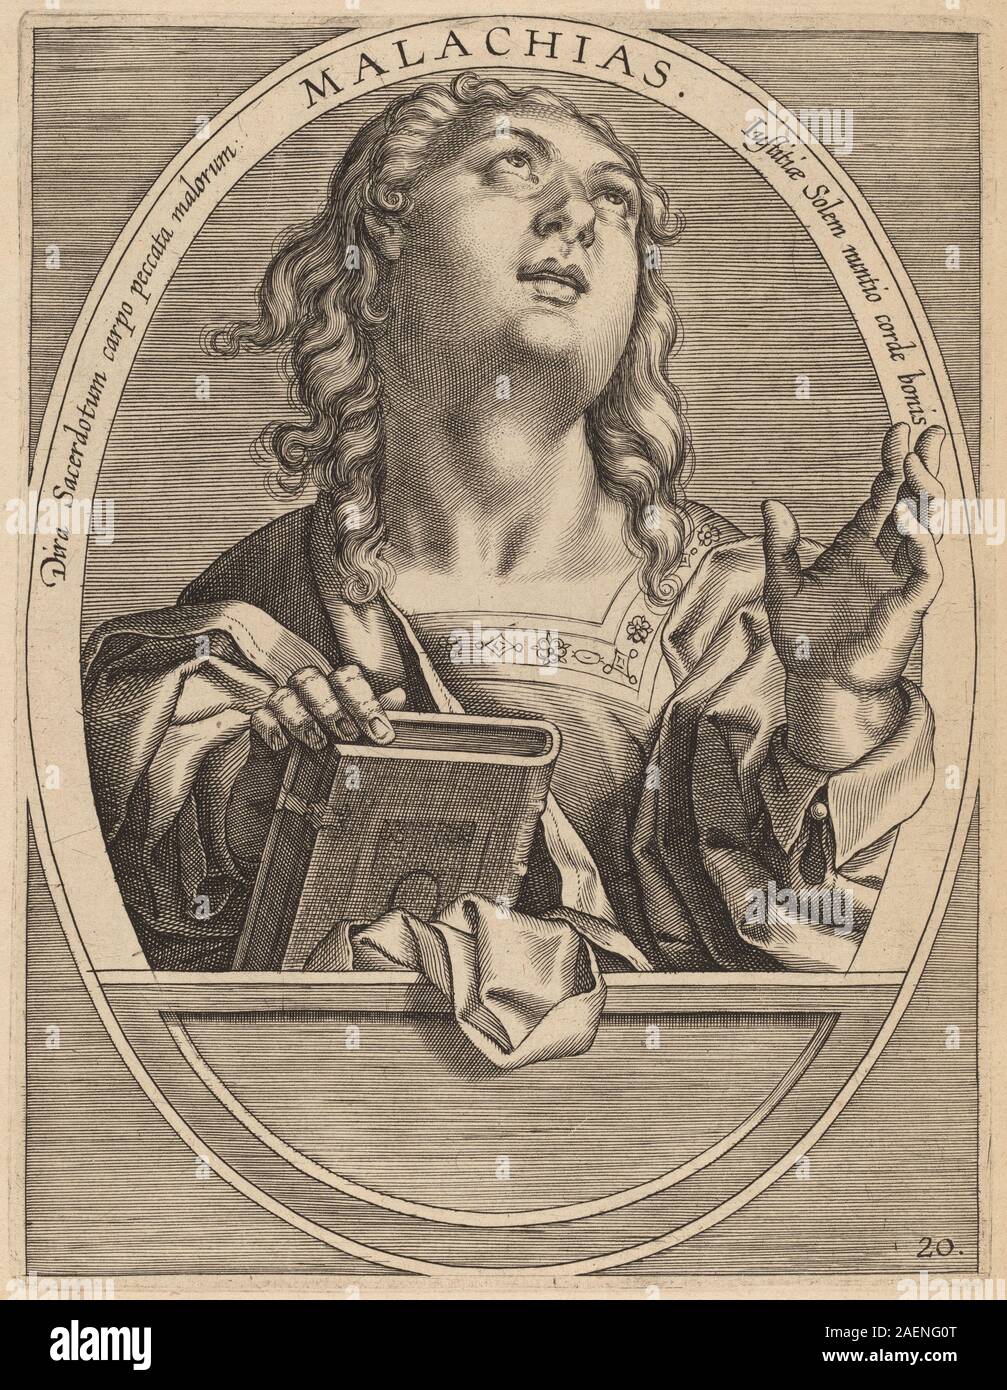 Theodor Galle after Jan van der Straet, Malachias, published 1613, Malachias; published 1613 Stock Photo